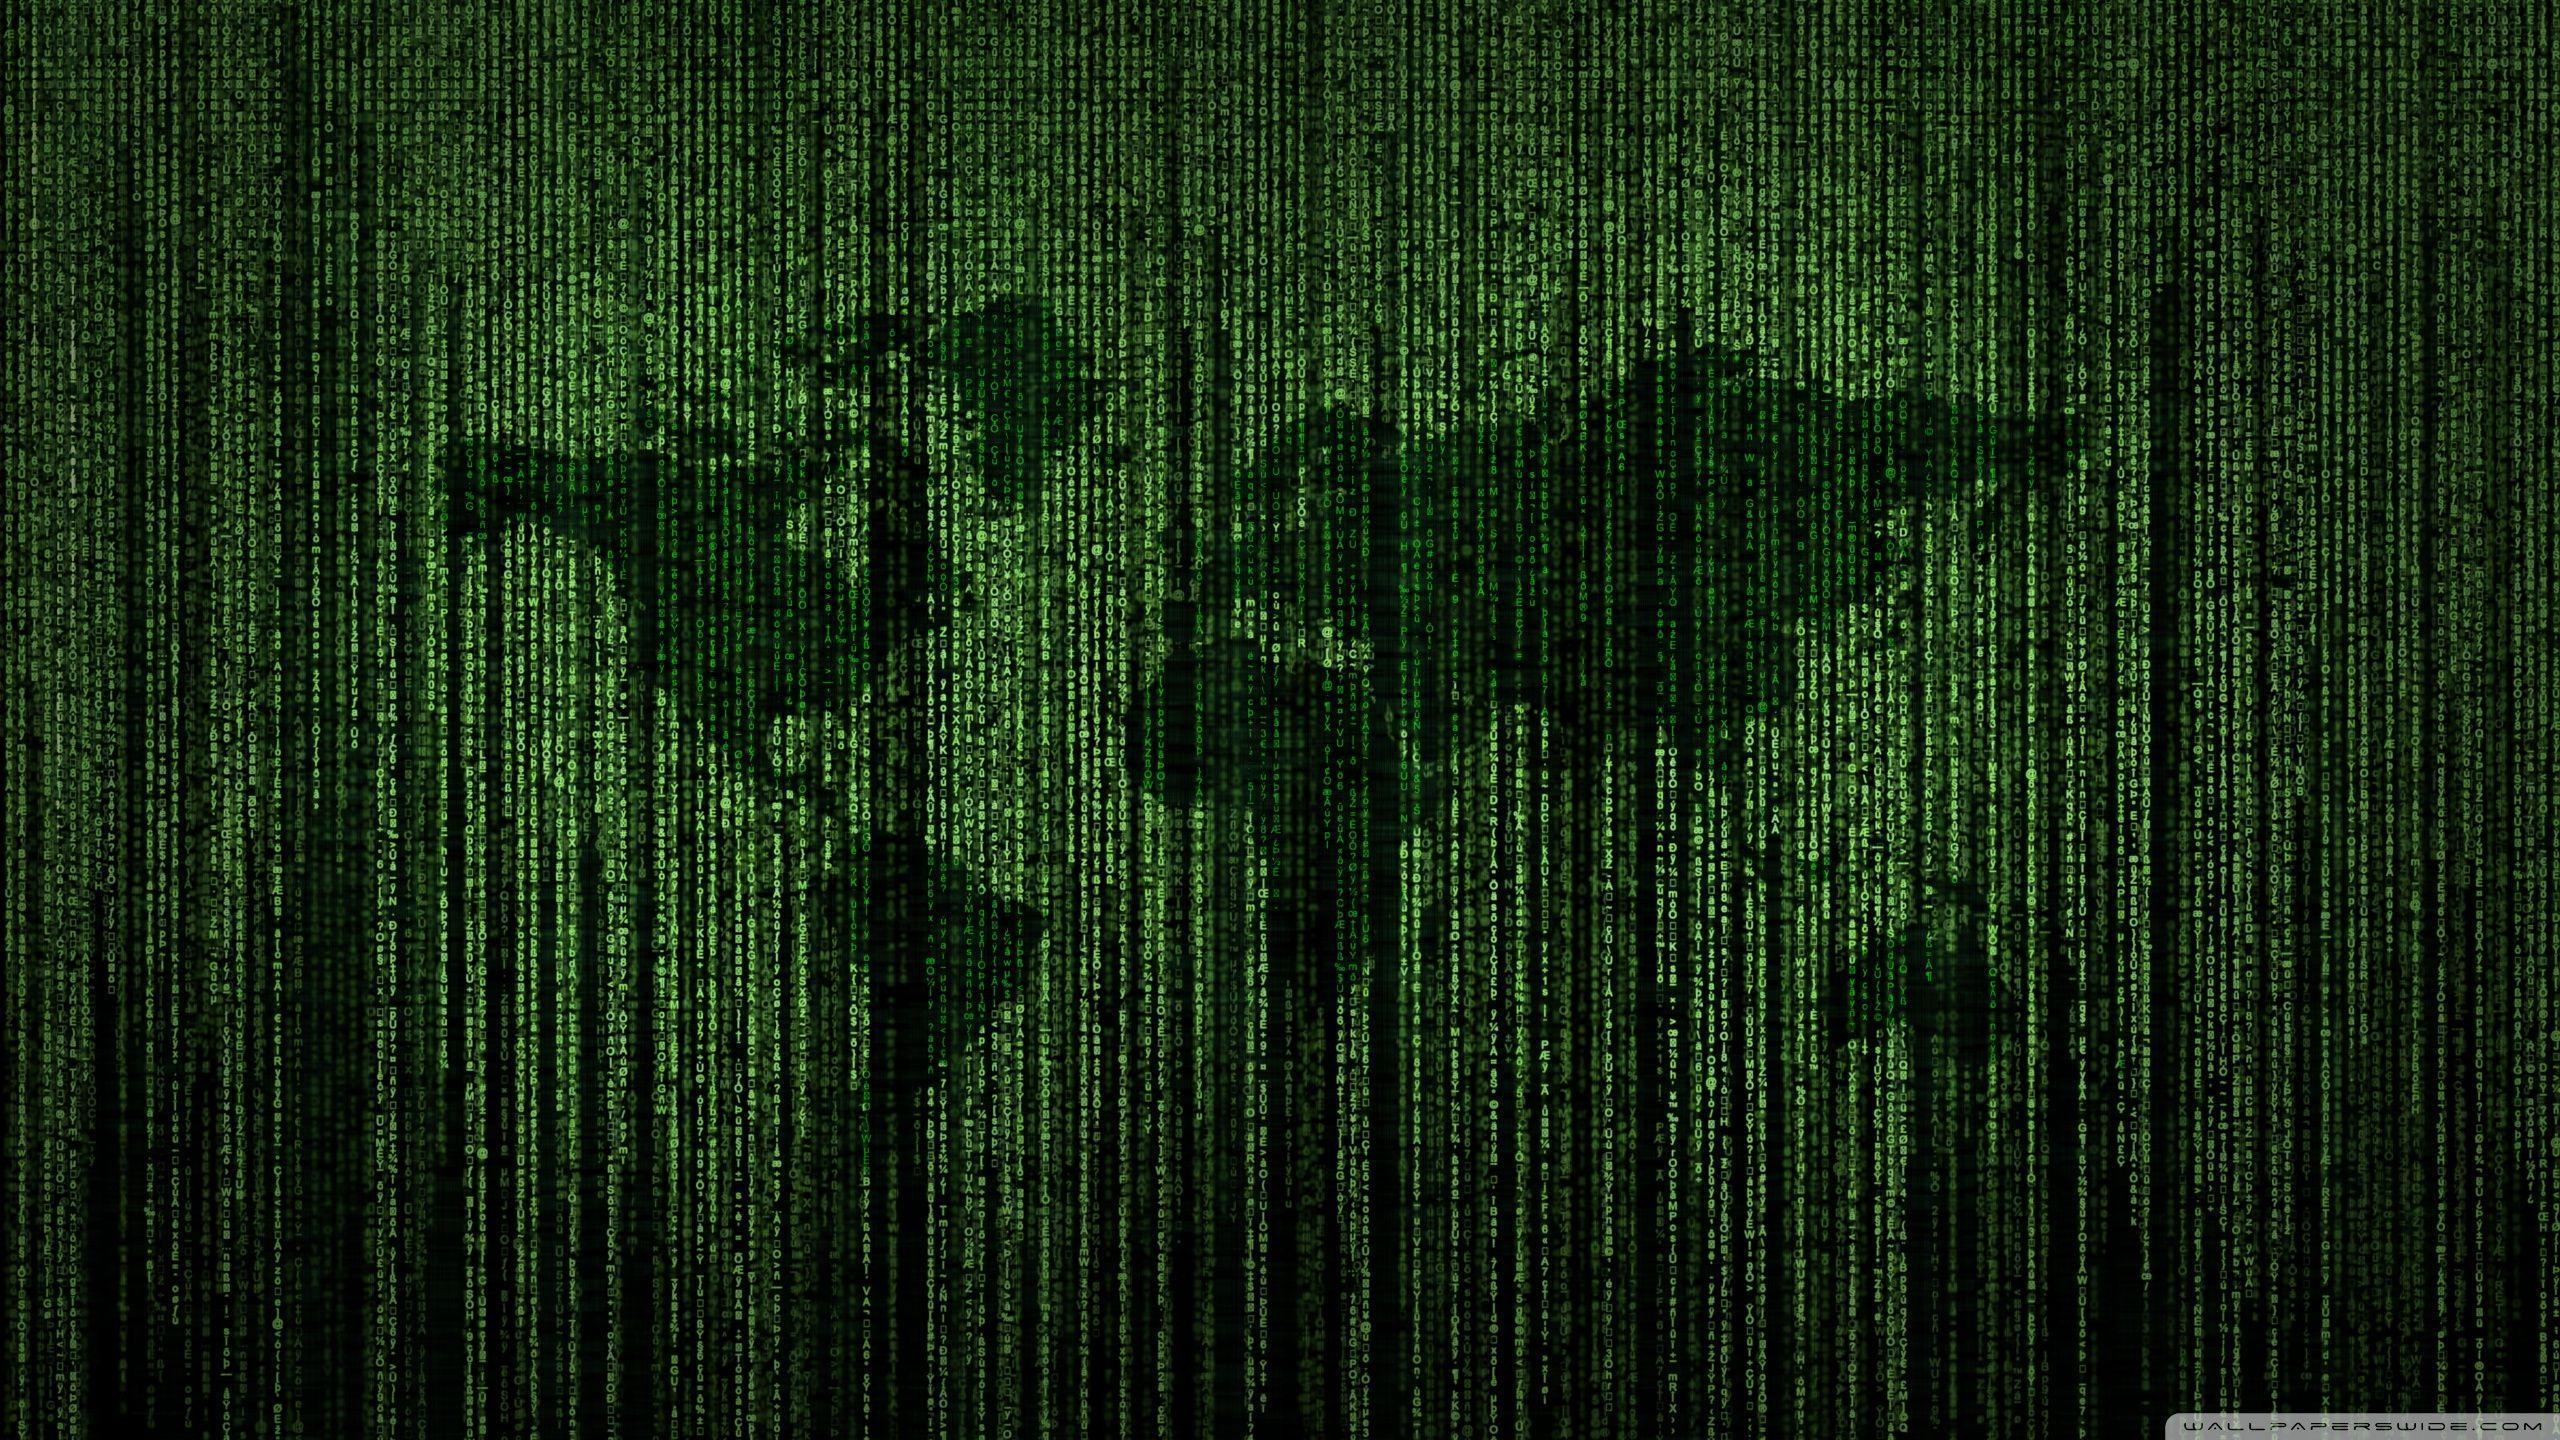 Green Matrix Code World Map HD desktop wallpaper, High Definition